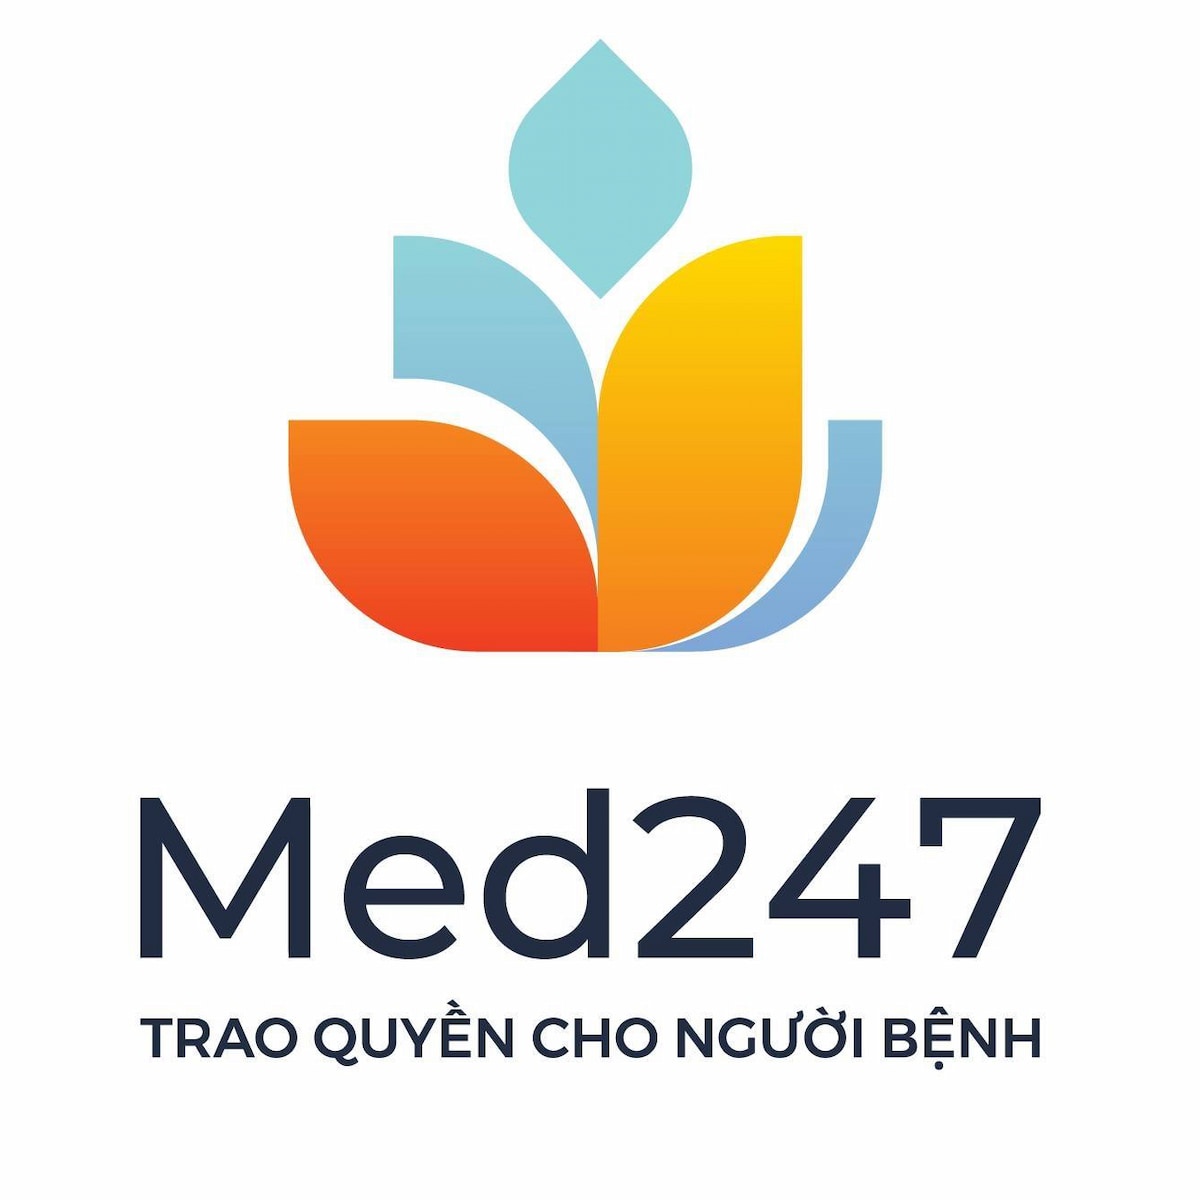 med247 trao quyền cho người bệnh